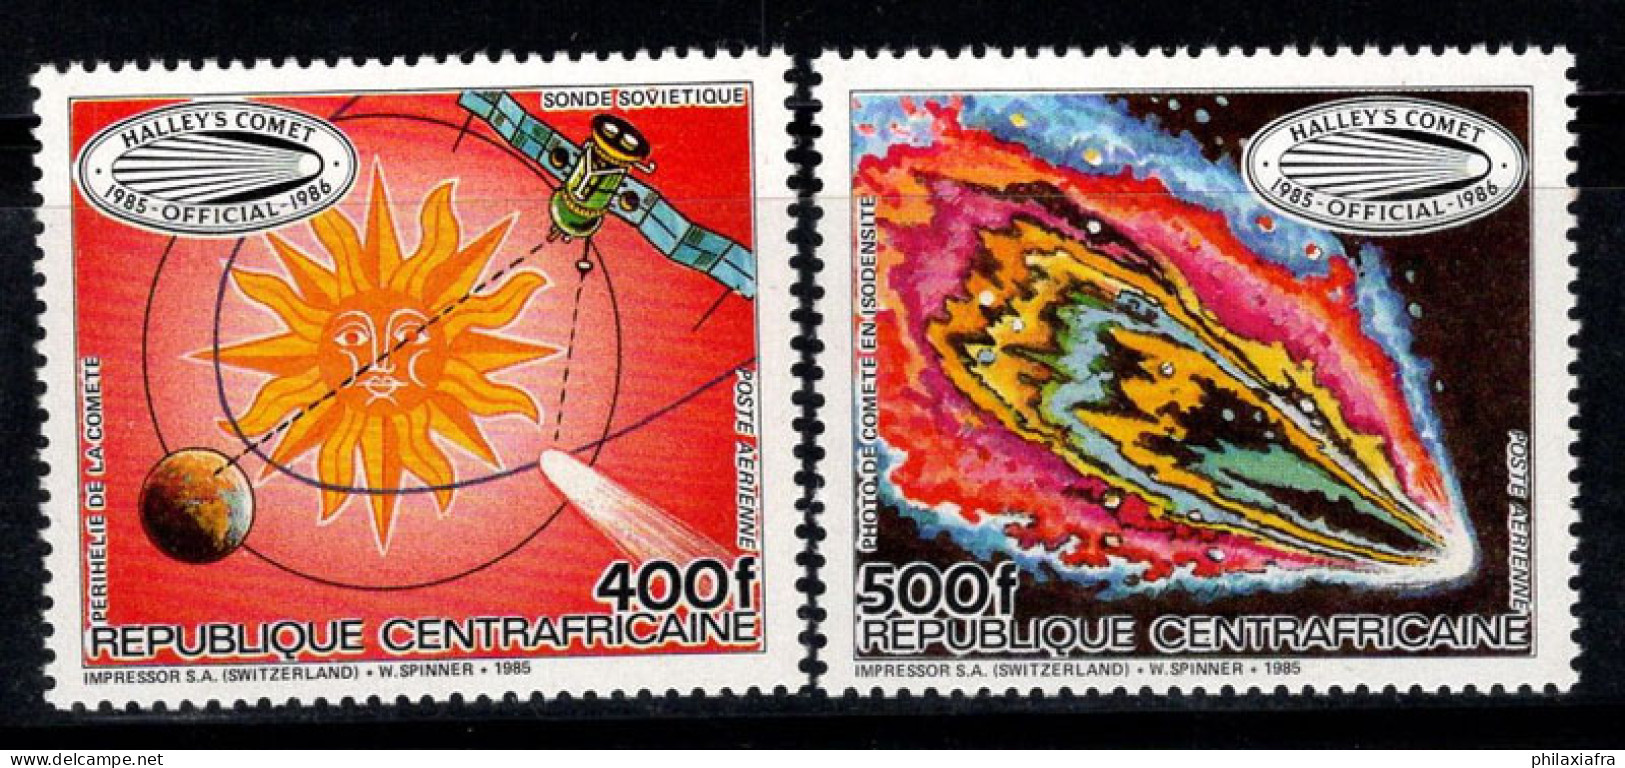 République Centrafricaine 1985 Mi. 1191-1192 Neuf ** 100% Poste Aérienne Comète De Halley - Central African Republic